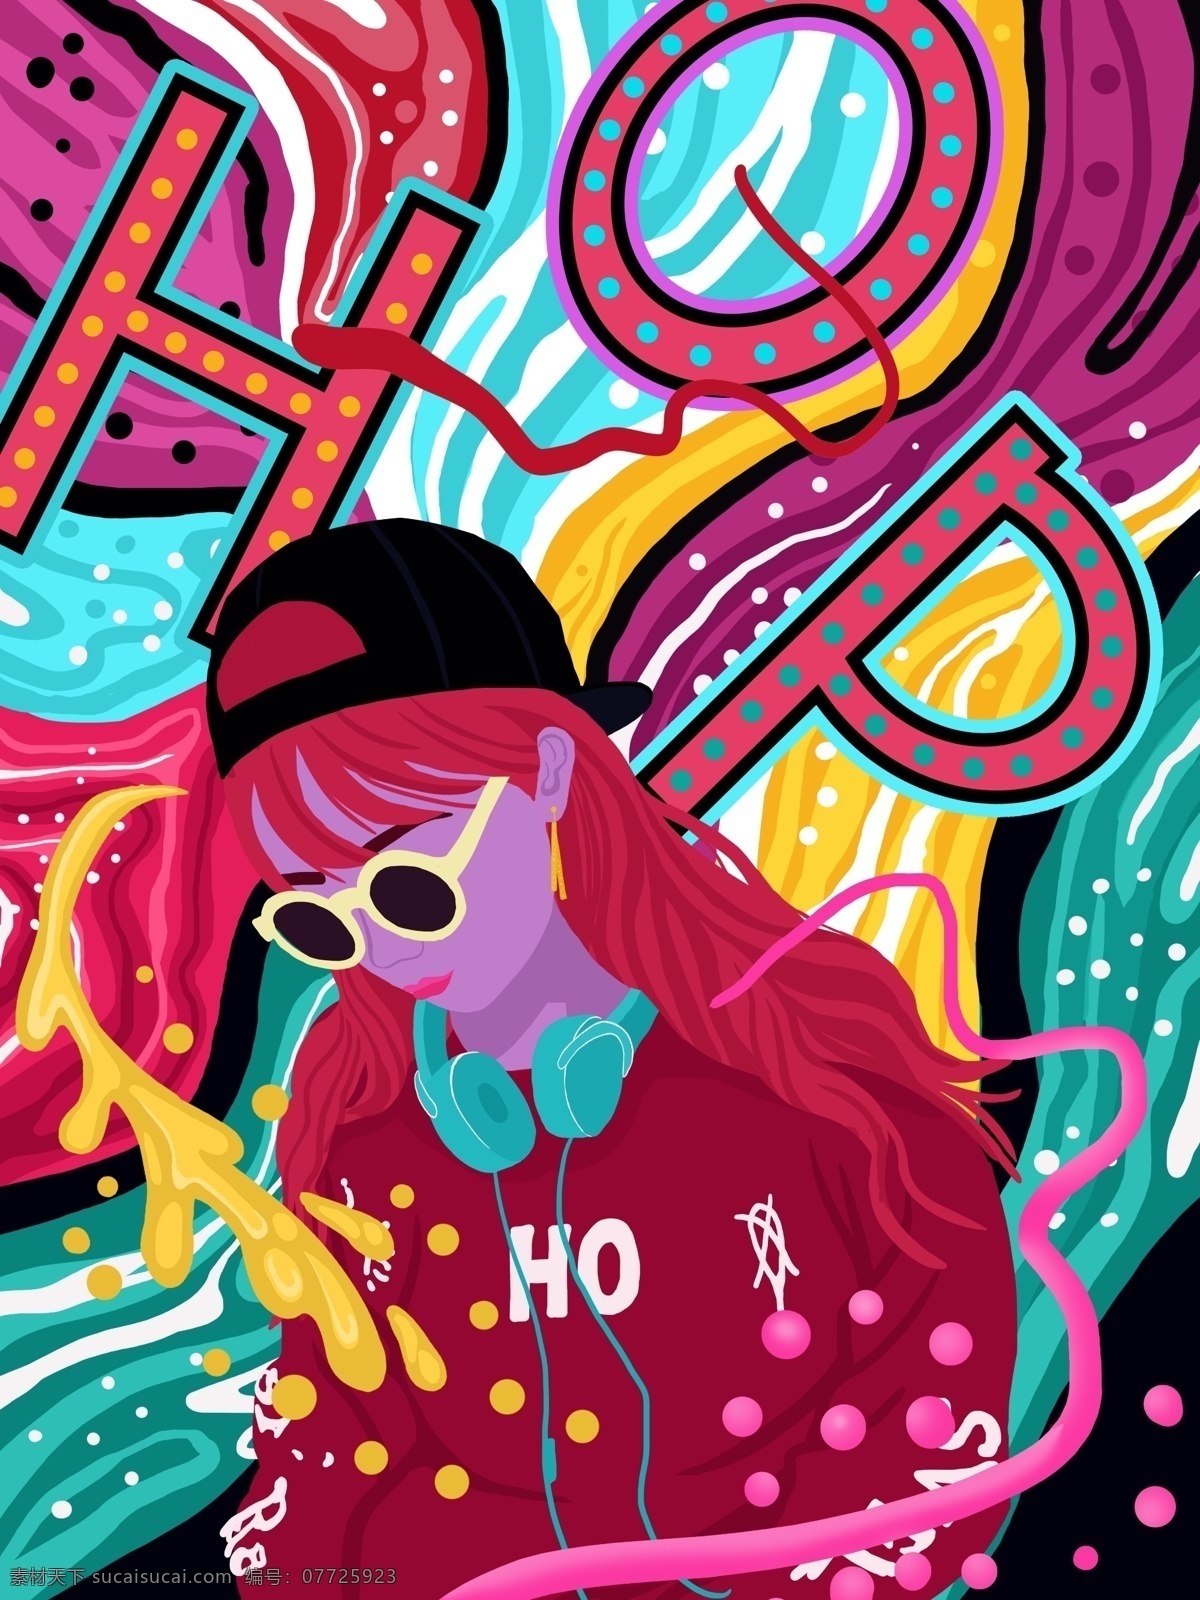 流动 糖果 色 嘻哈 音乐 女孩 系列 插画 糖果色 流动的色彩 音乐女孩 hop 嘻哈少女 微信用图